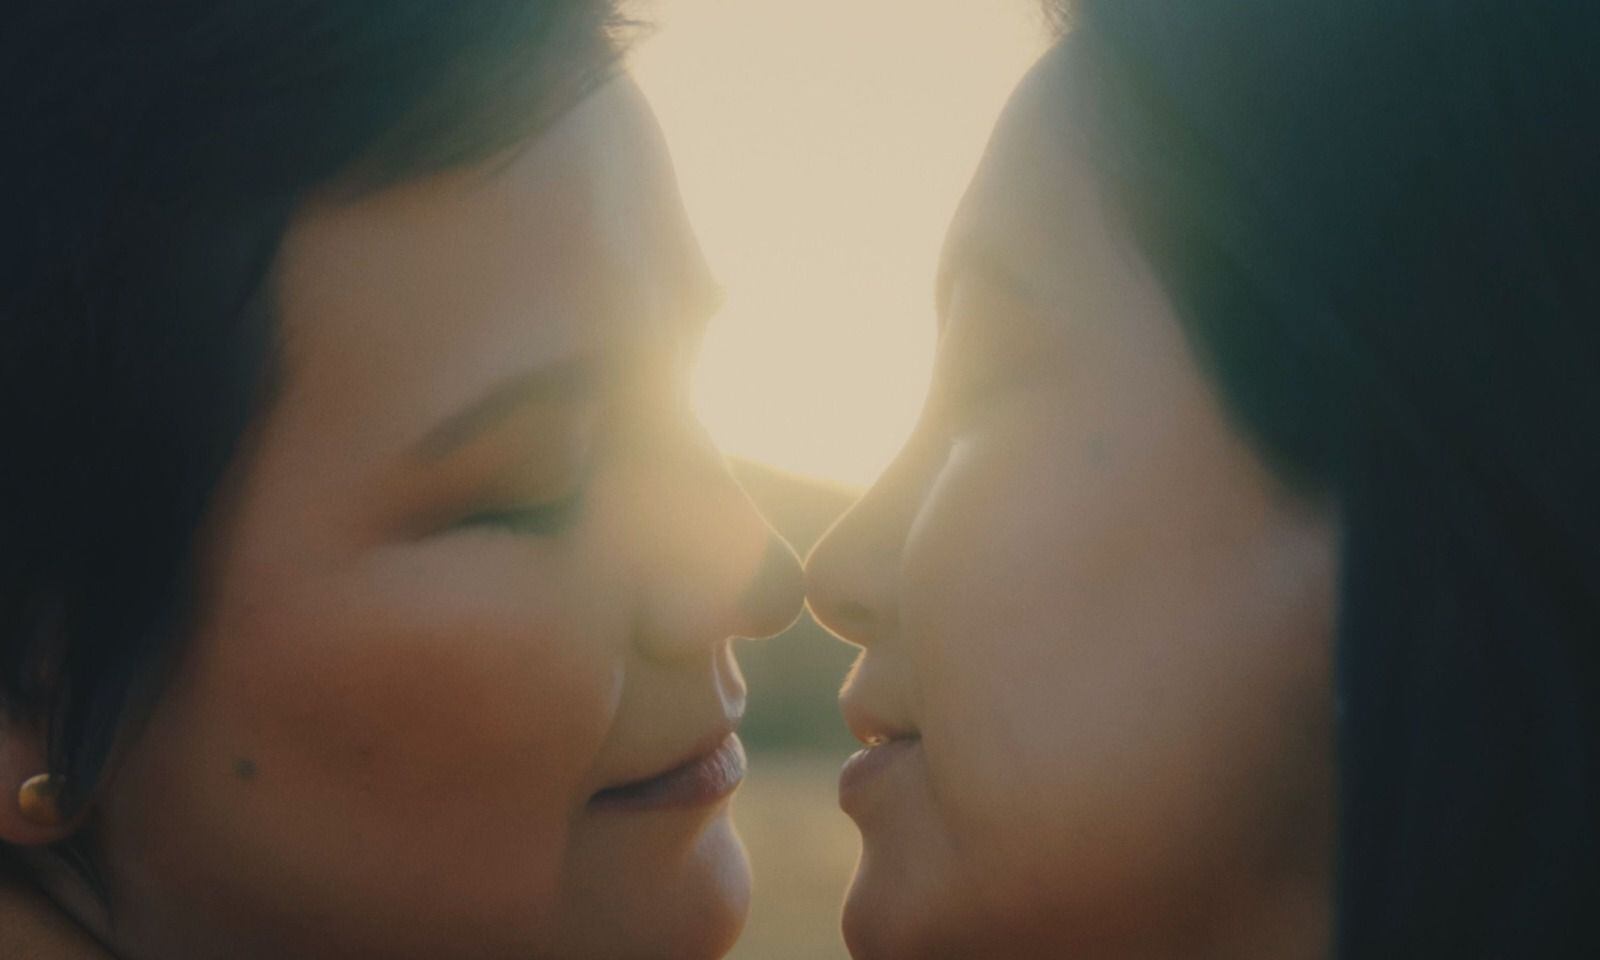 El videoclip de "Bésame otra vez" cuenta la historia de la magia del primer beso y es protagonizada por ella. 